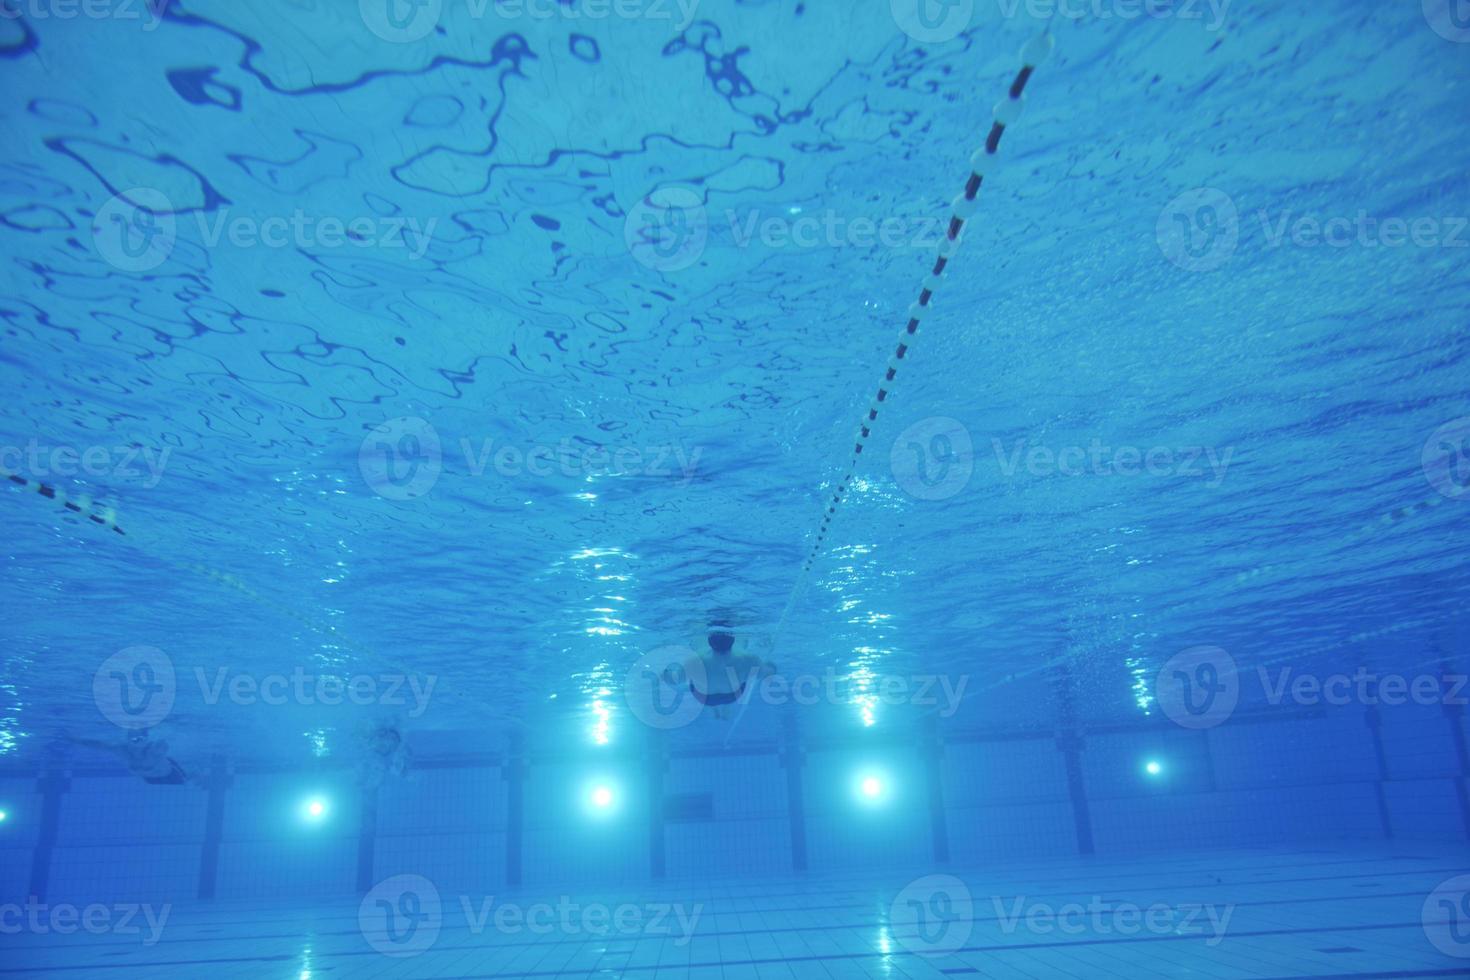 Schwimmbad unter Wasser foto